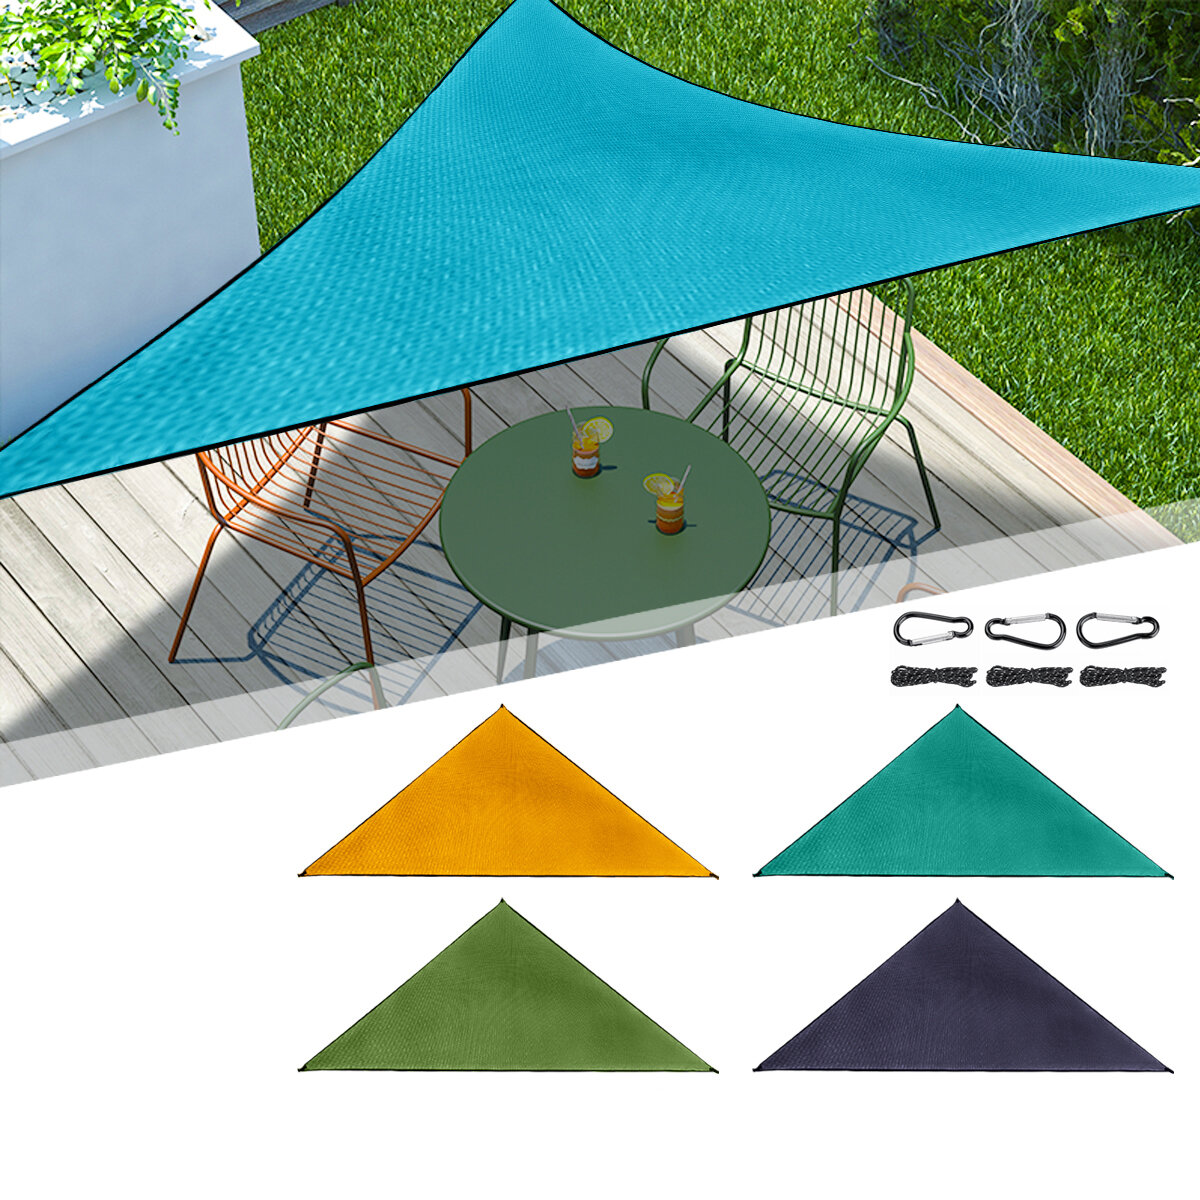 Toldo de sombra de 6x6x6m resistente al agua y protección UV, ideal para piscinas, playas, jardines y patios.